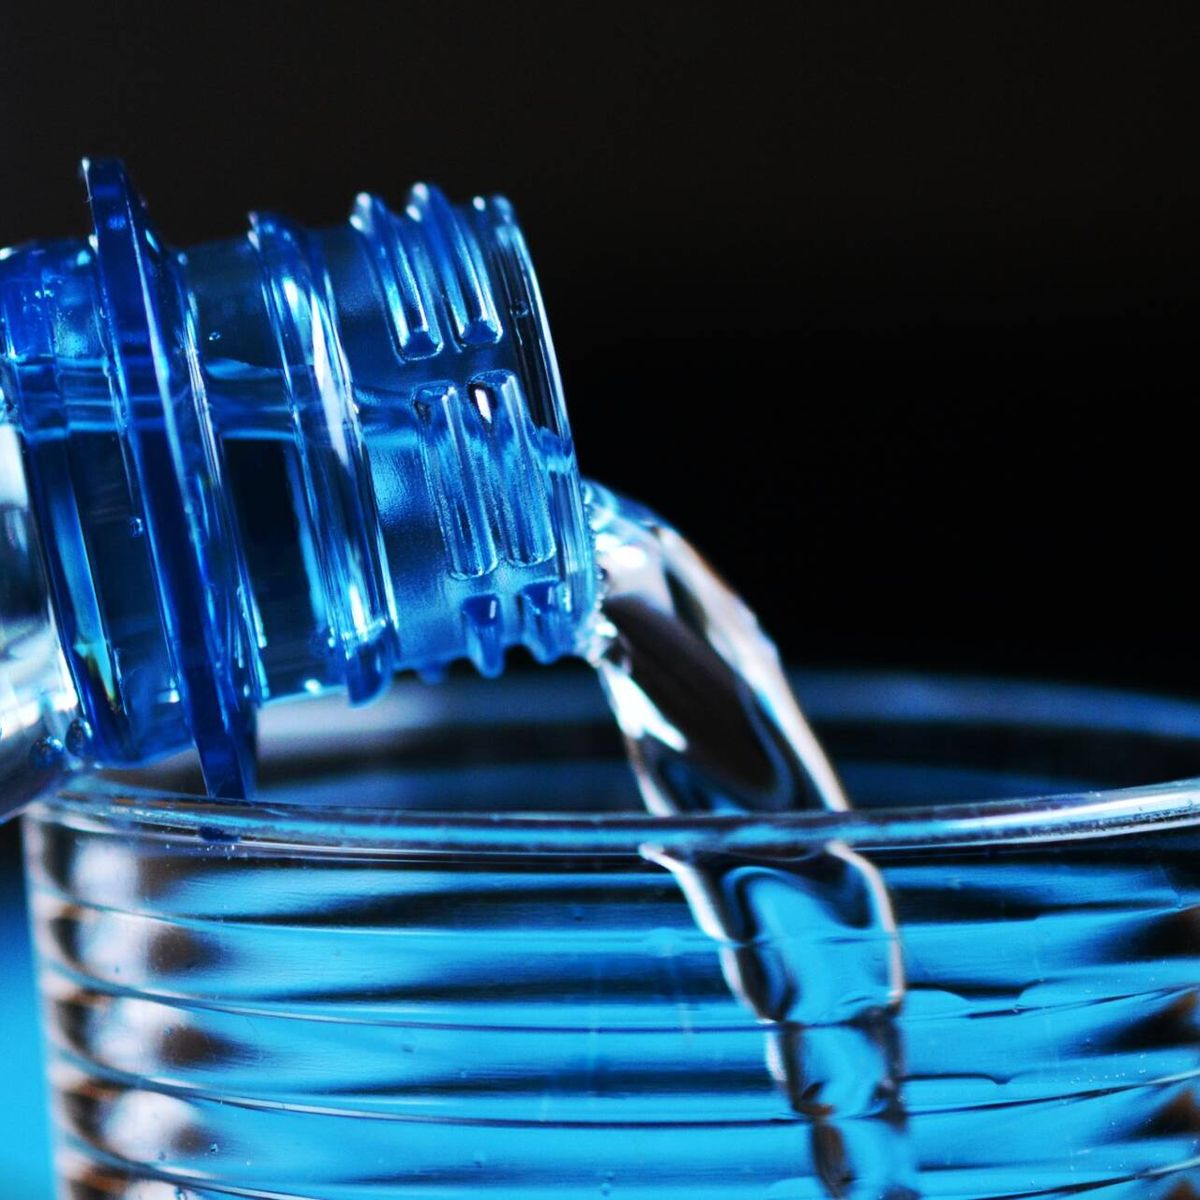 Beneficios de beber agua con gas, el refresco del verano